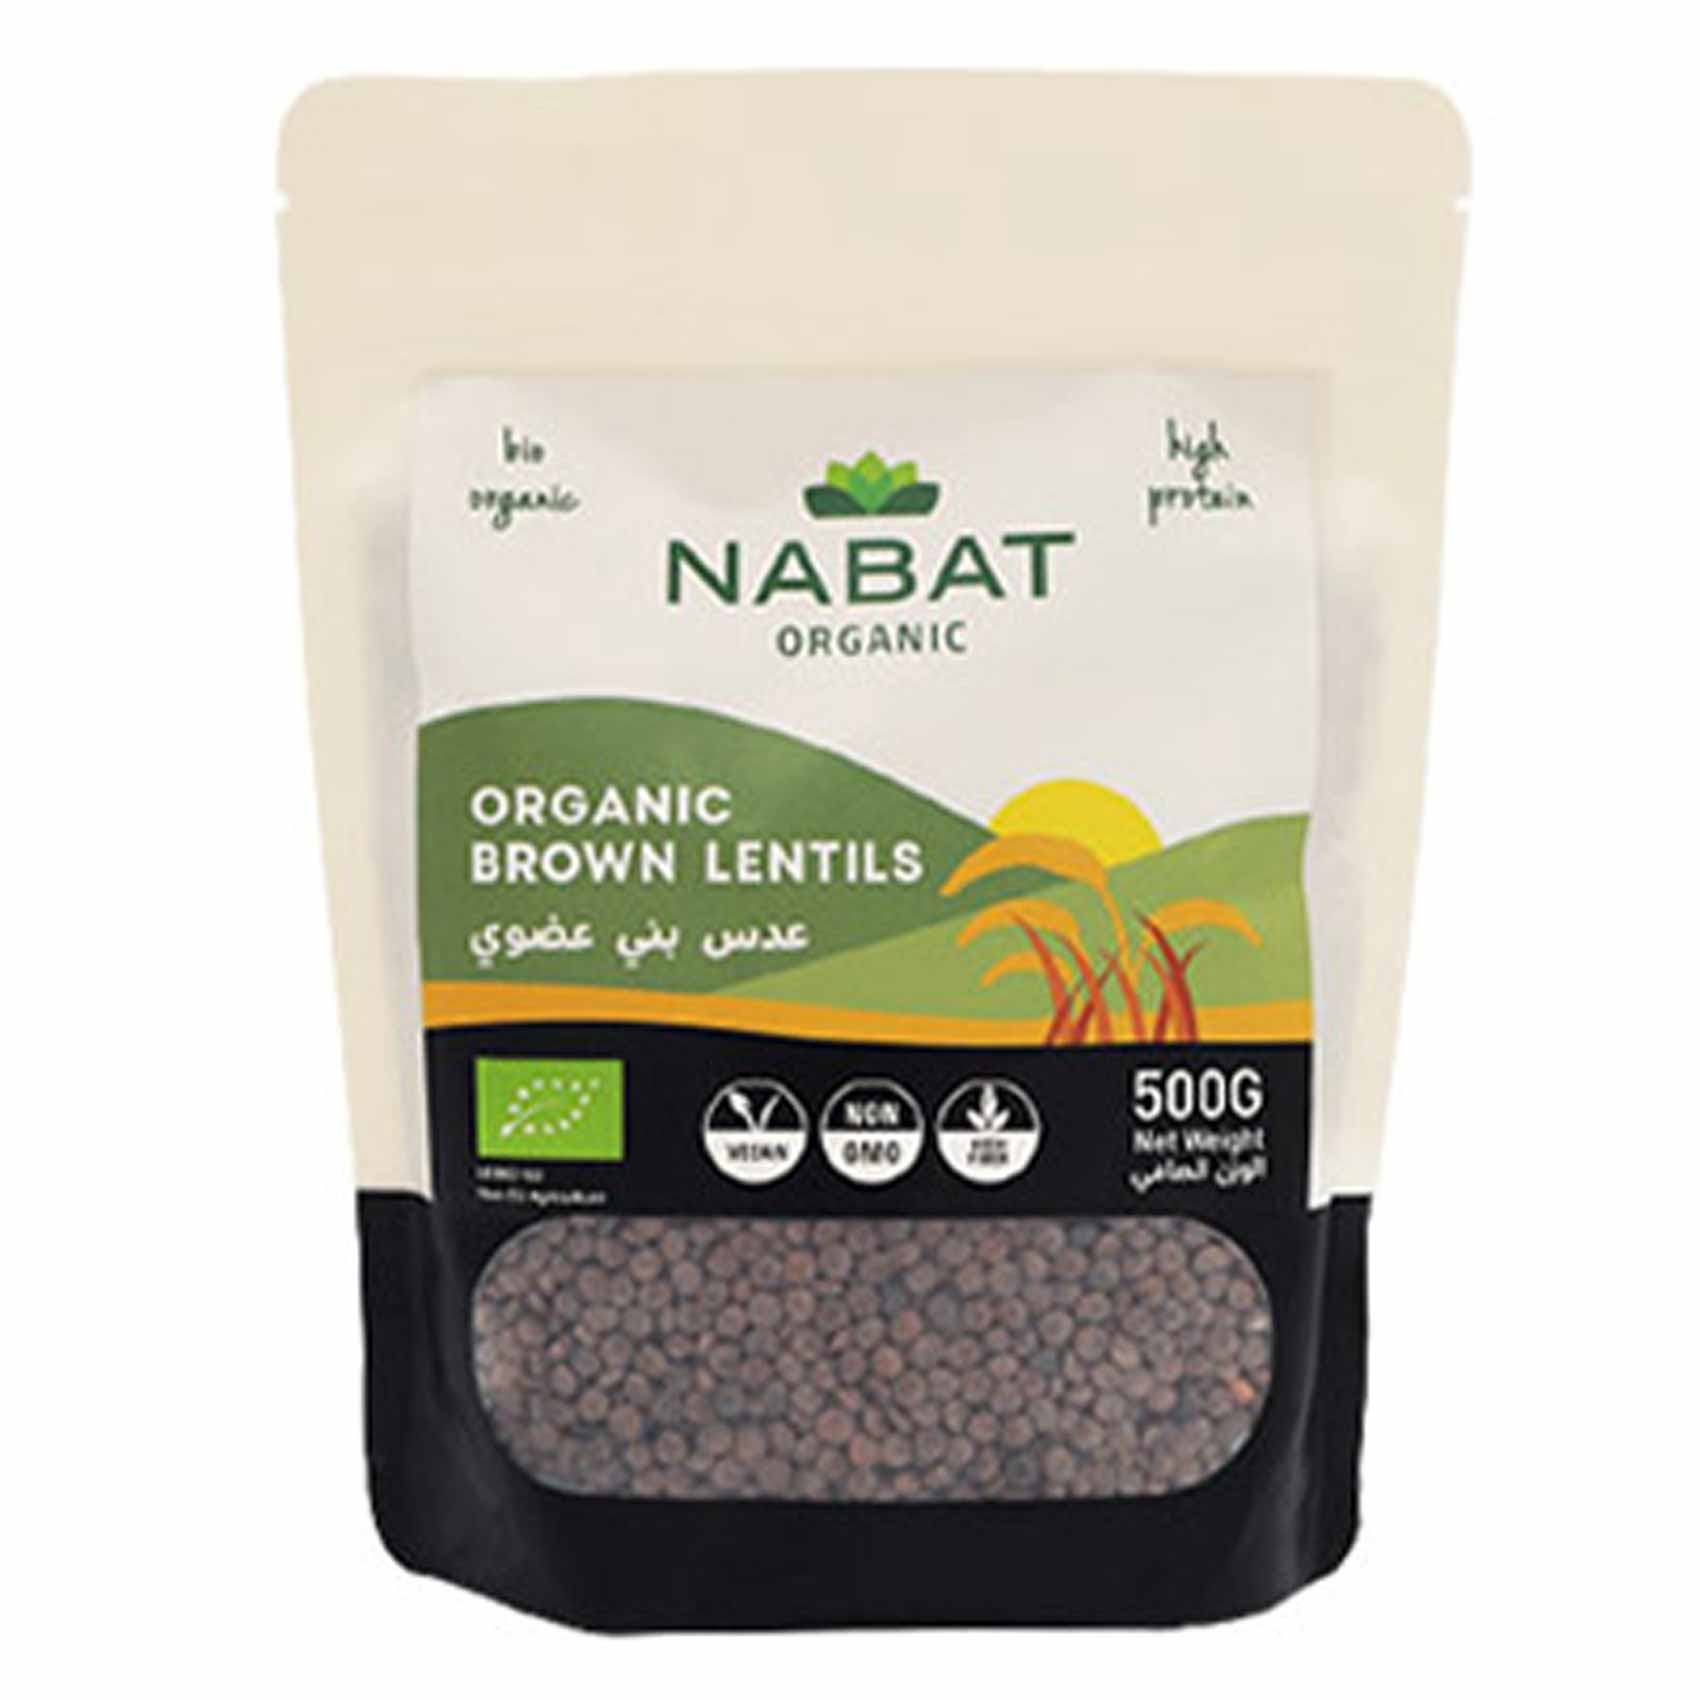 Nabat Organic Brown Lentils 500g